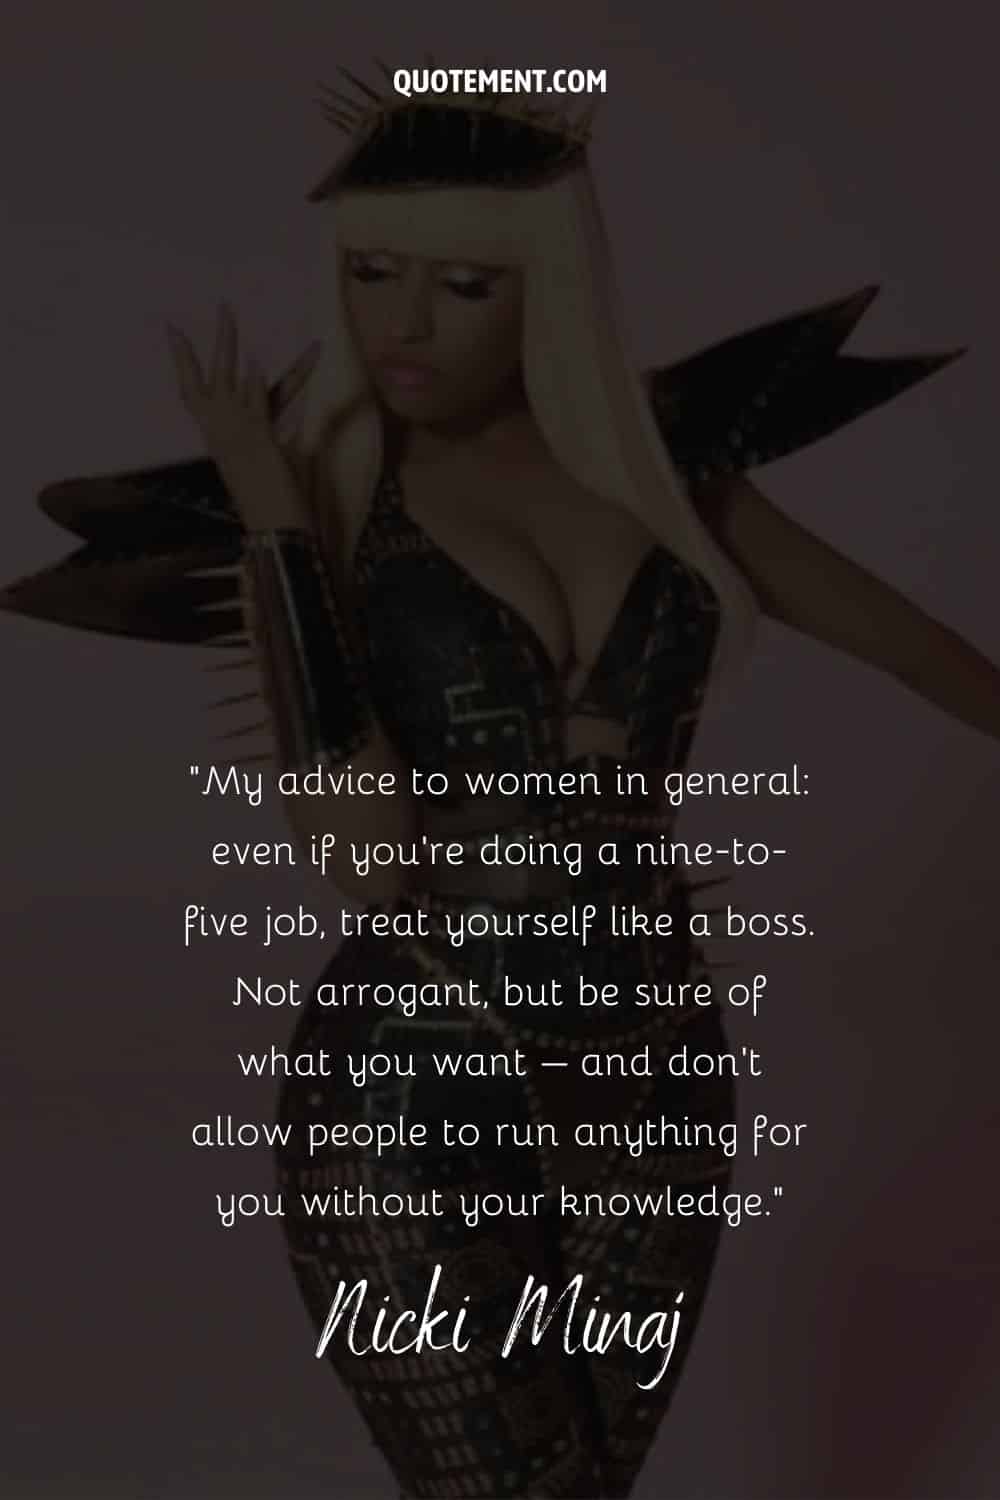 Cita inspiradora de Nicki Minaj que habla de tratarse a uno mismo como un jefe, y su foto de fondo